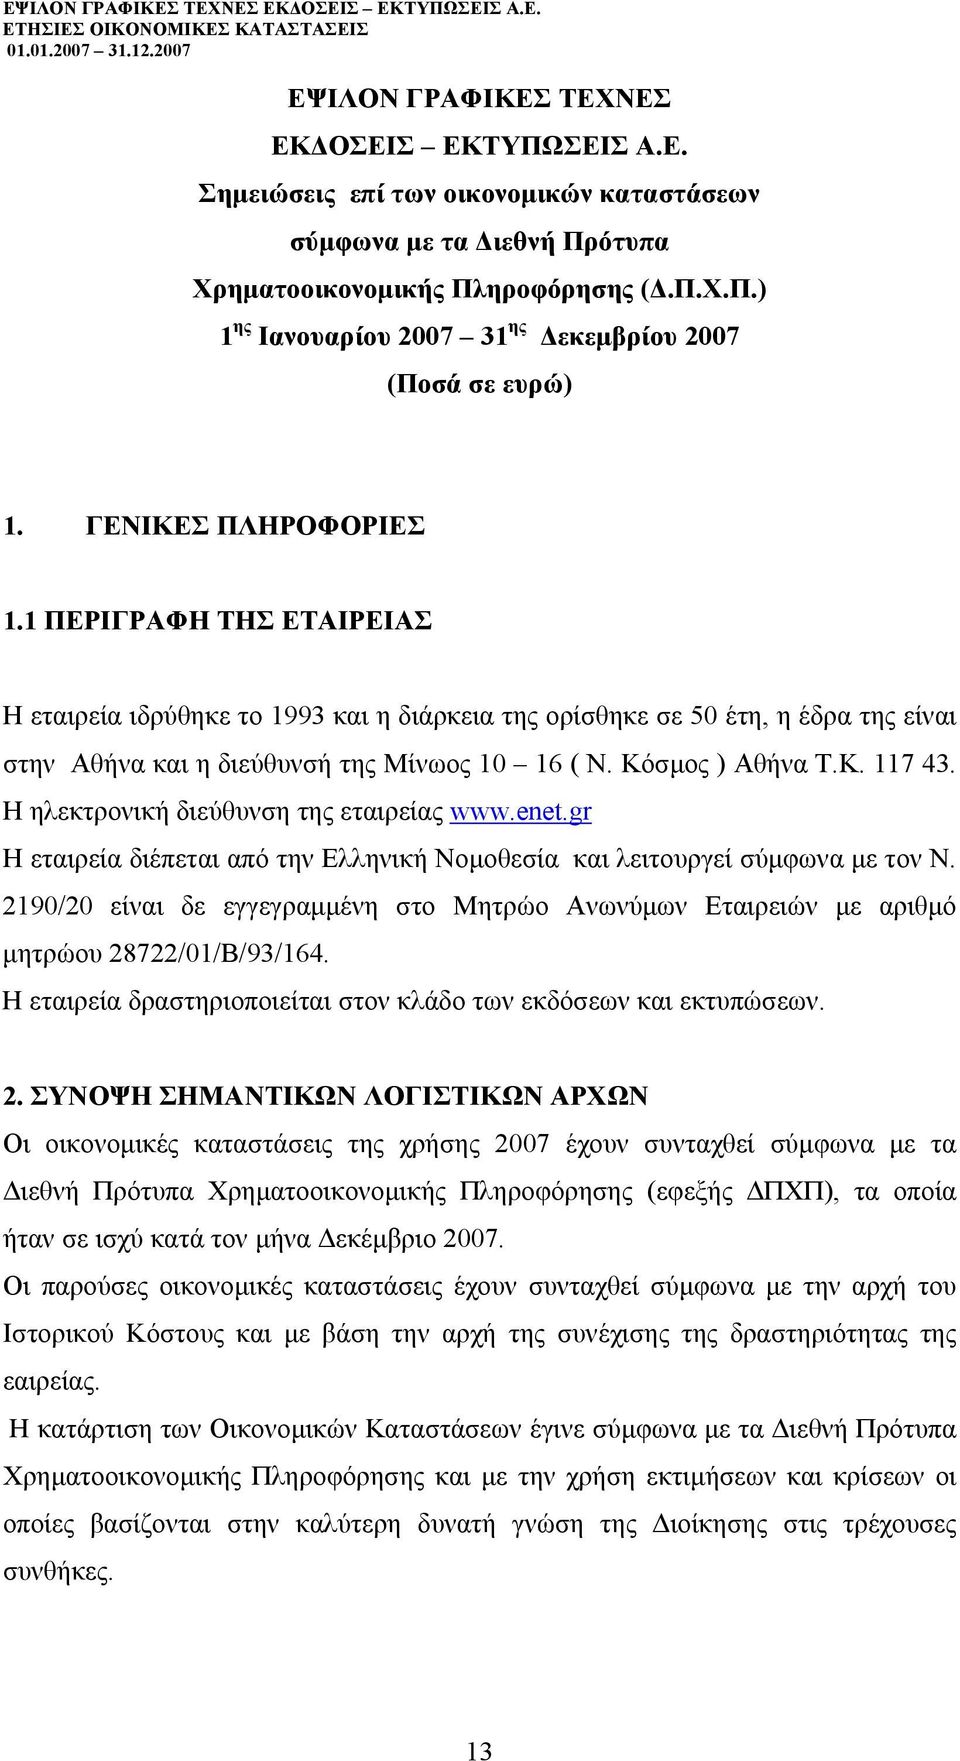 Η ηλεκτρονική διεύθυνση της εταιρείας www.enet.gr Η εταιρεία διέπεται από την Ελληνική Νοµοθεσία και λειτουργεί σύµφωνα µε τον Ν.